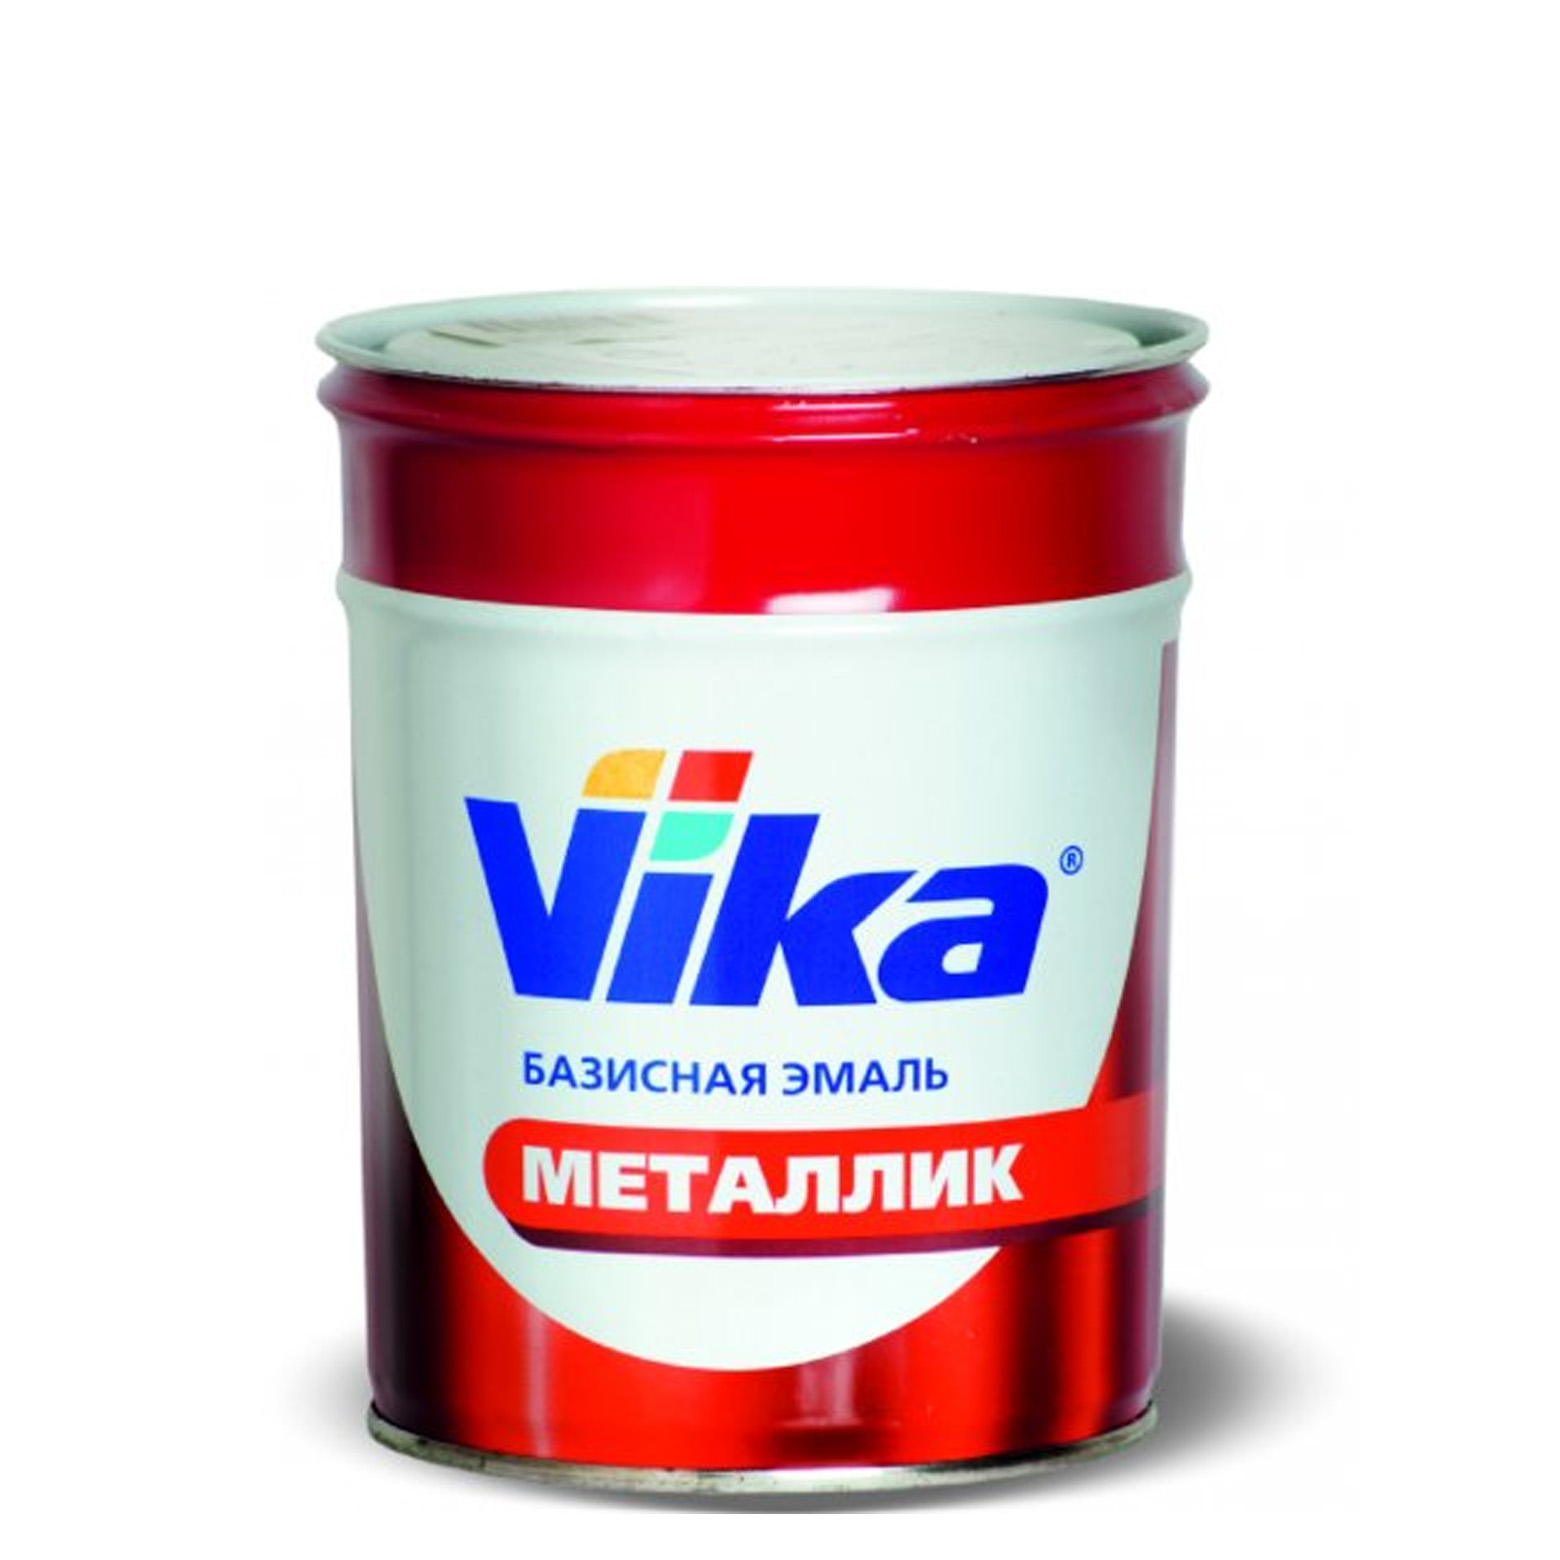 Фото 1 - Автоэмаль Металлик, цвет 371 Амулет, профессиональная базовая, - 0,9 кг Vika/Вика.